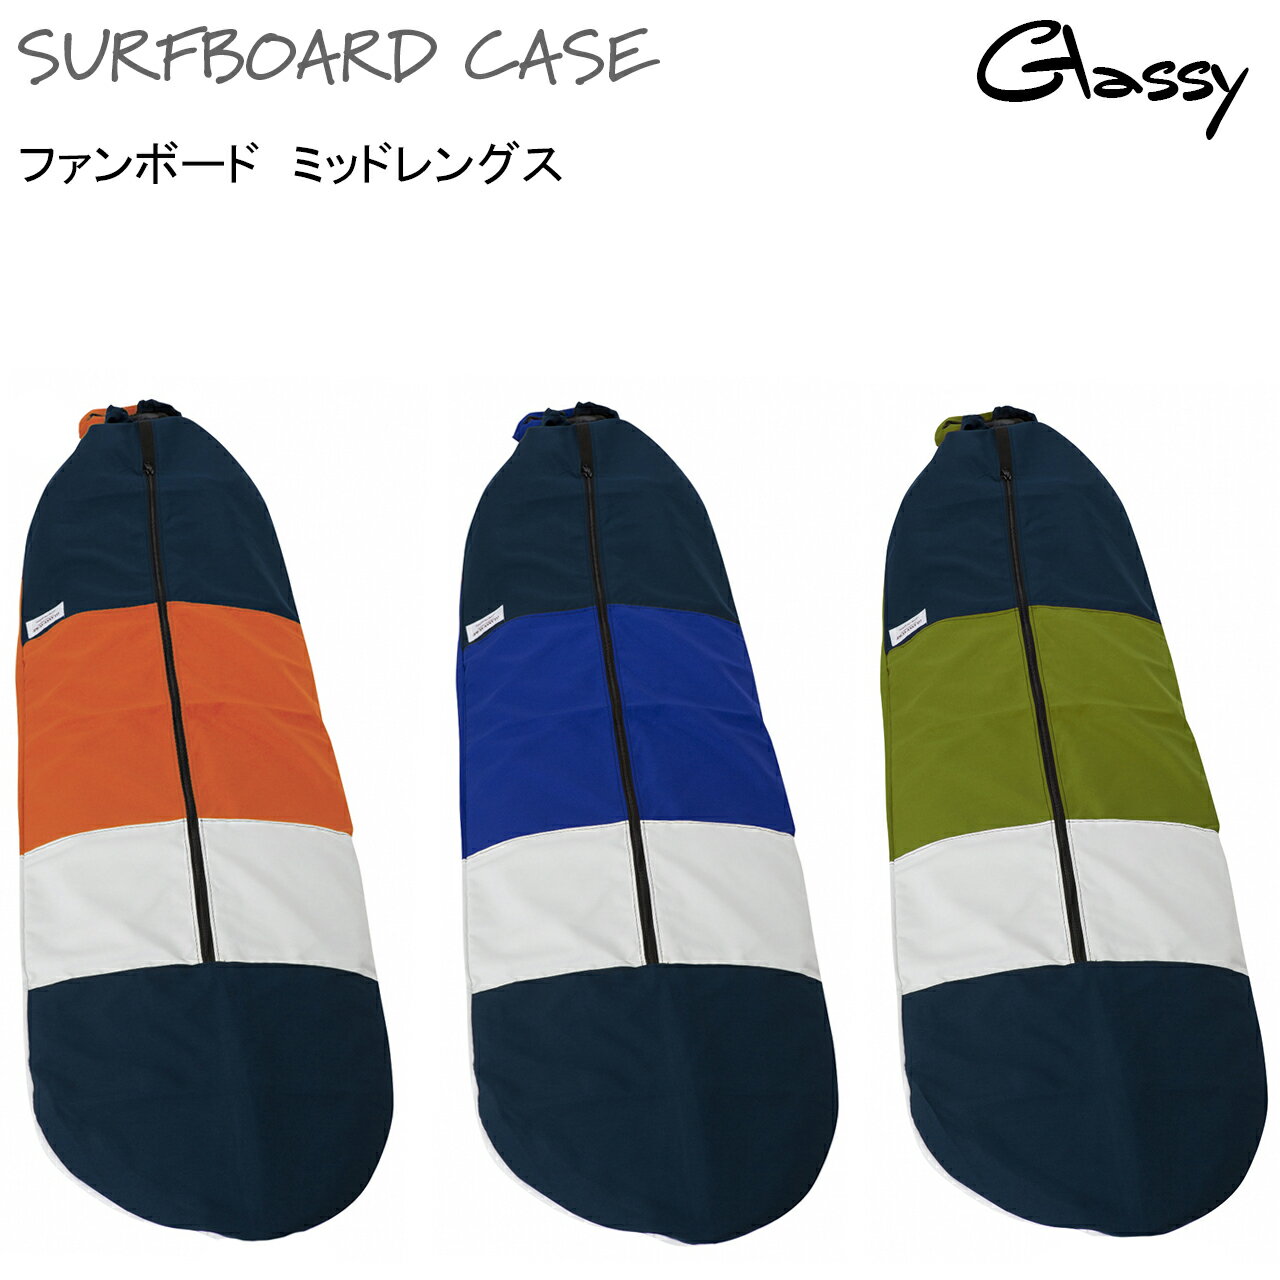 サーフボードケース サーフィン ボードケース ソフトケース サーフボードカバー ファンボード ミッドレングス ニットケース より出入れしやすい 裏地あり GLASSY グラッシー